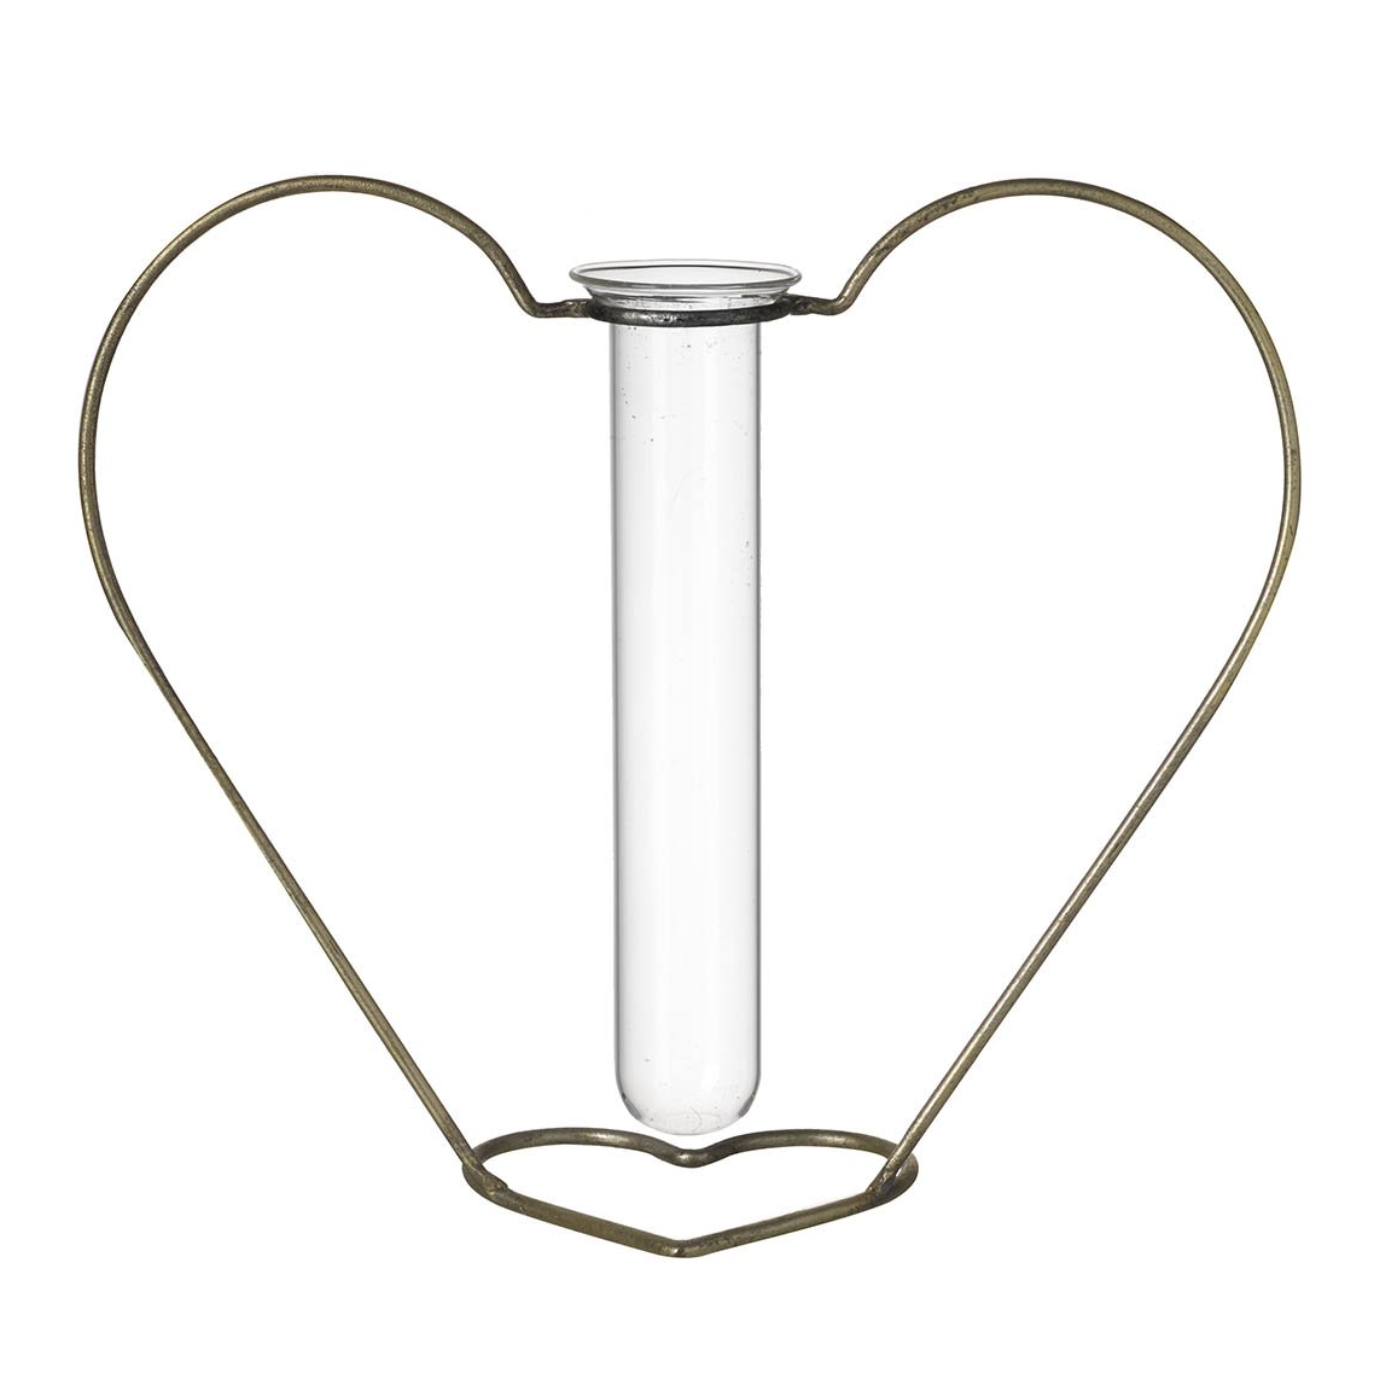 Parlane Living Heart Single Stem Vase